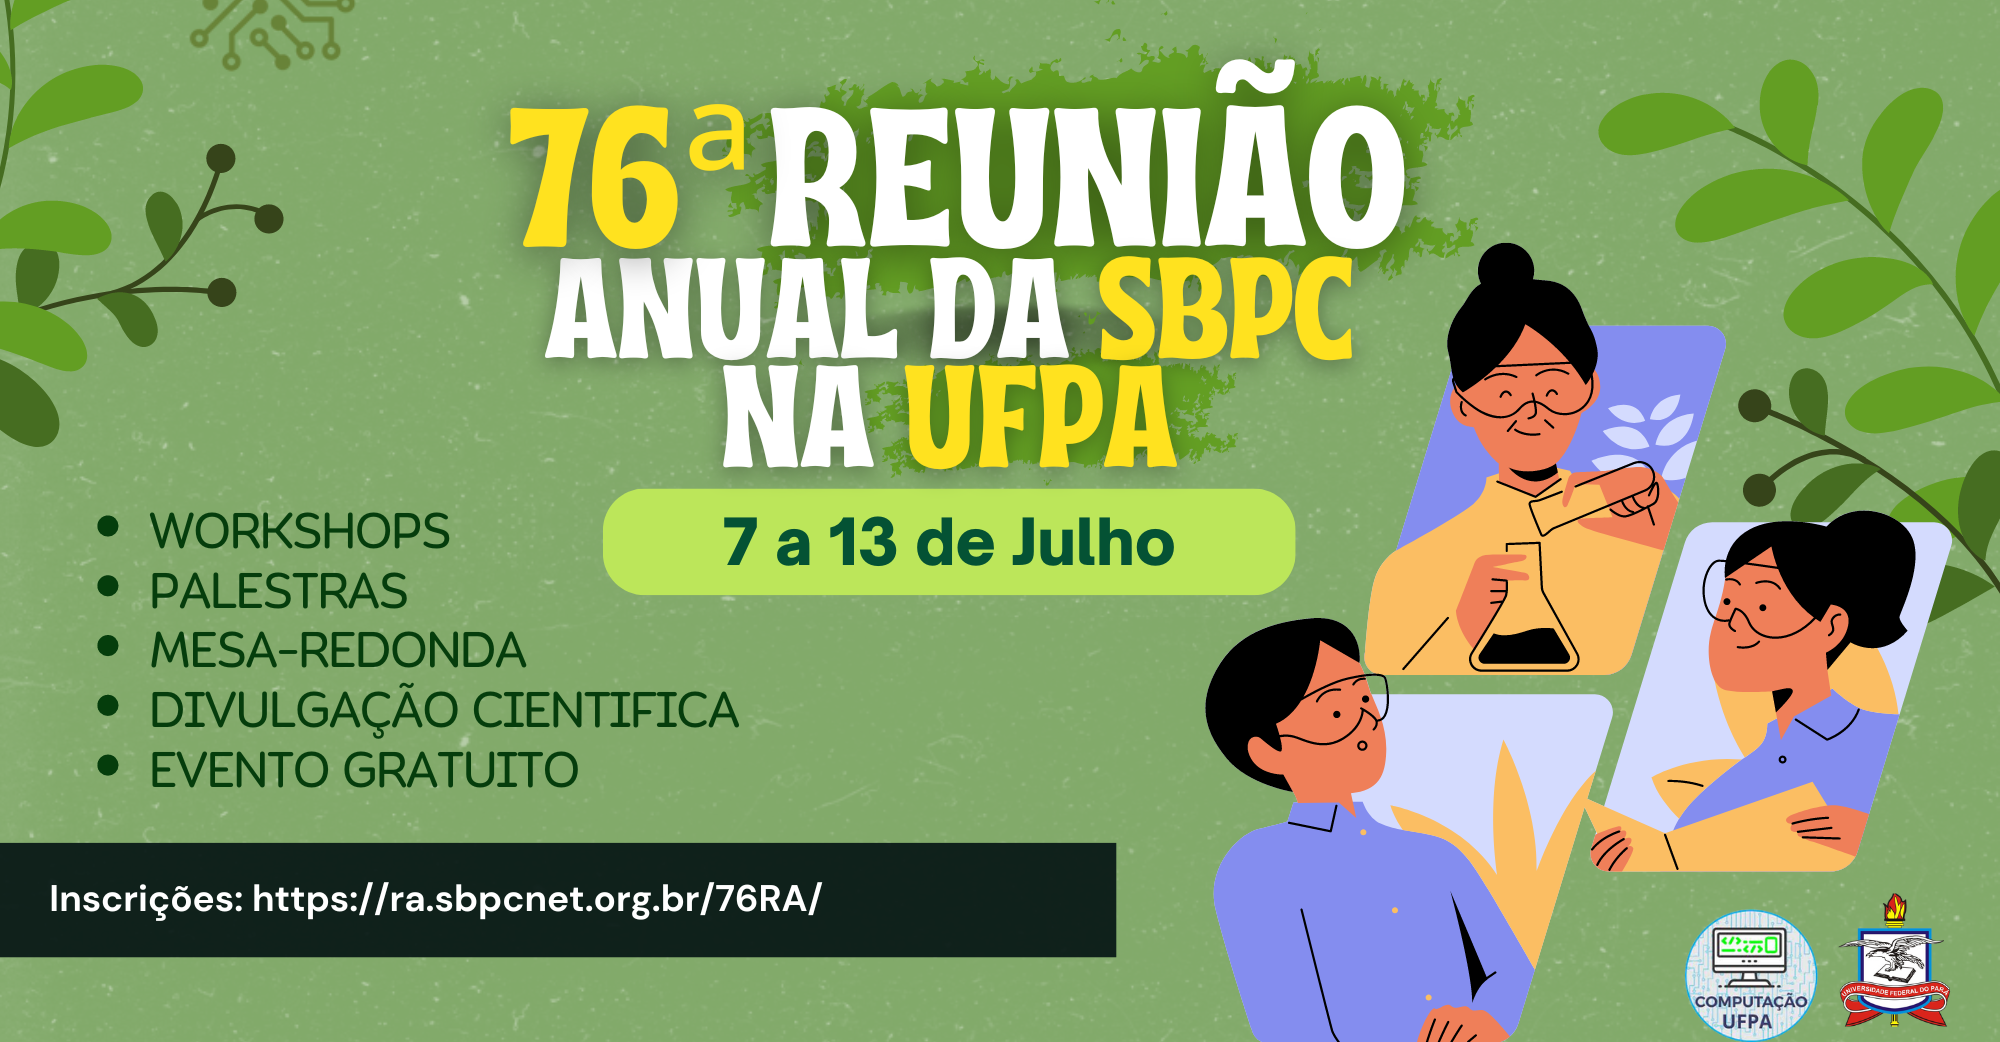 76ª reunião anual da SBPC na UFPA